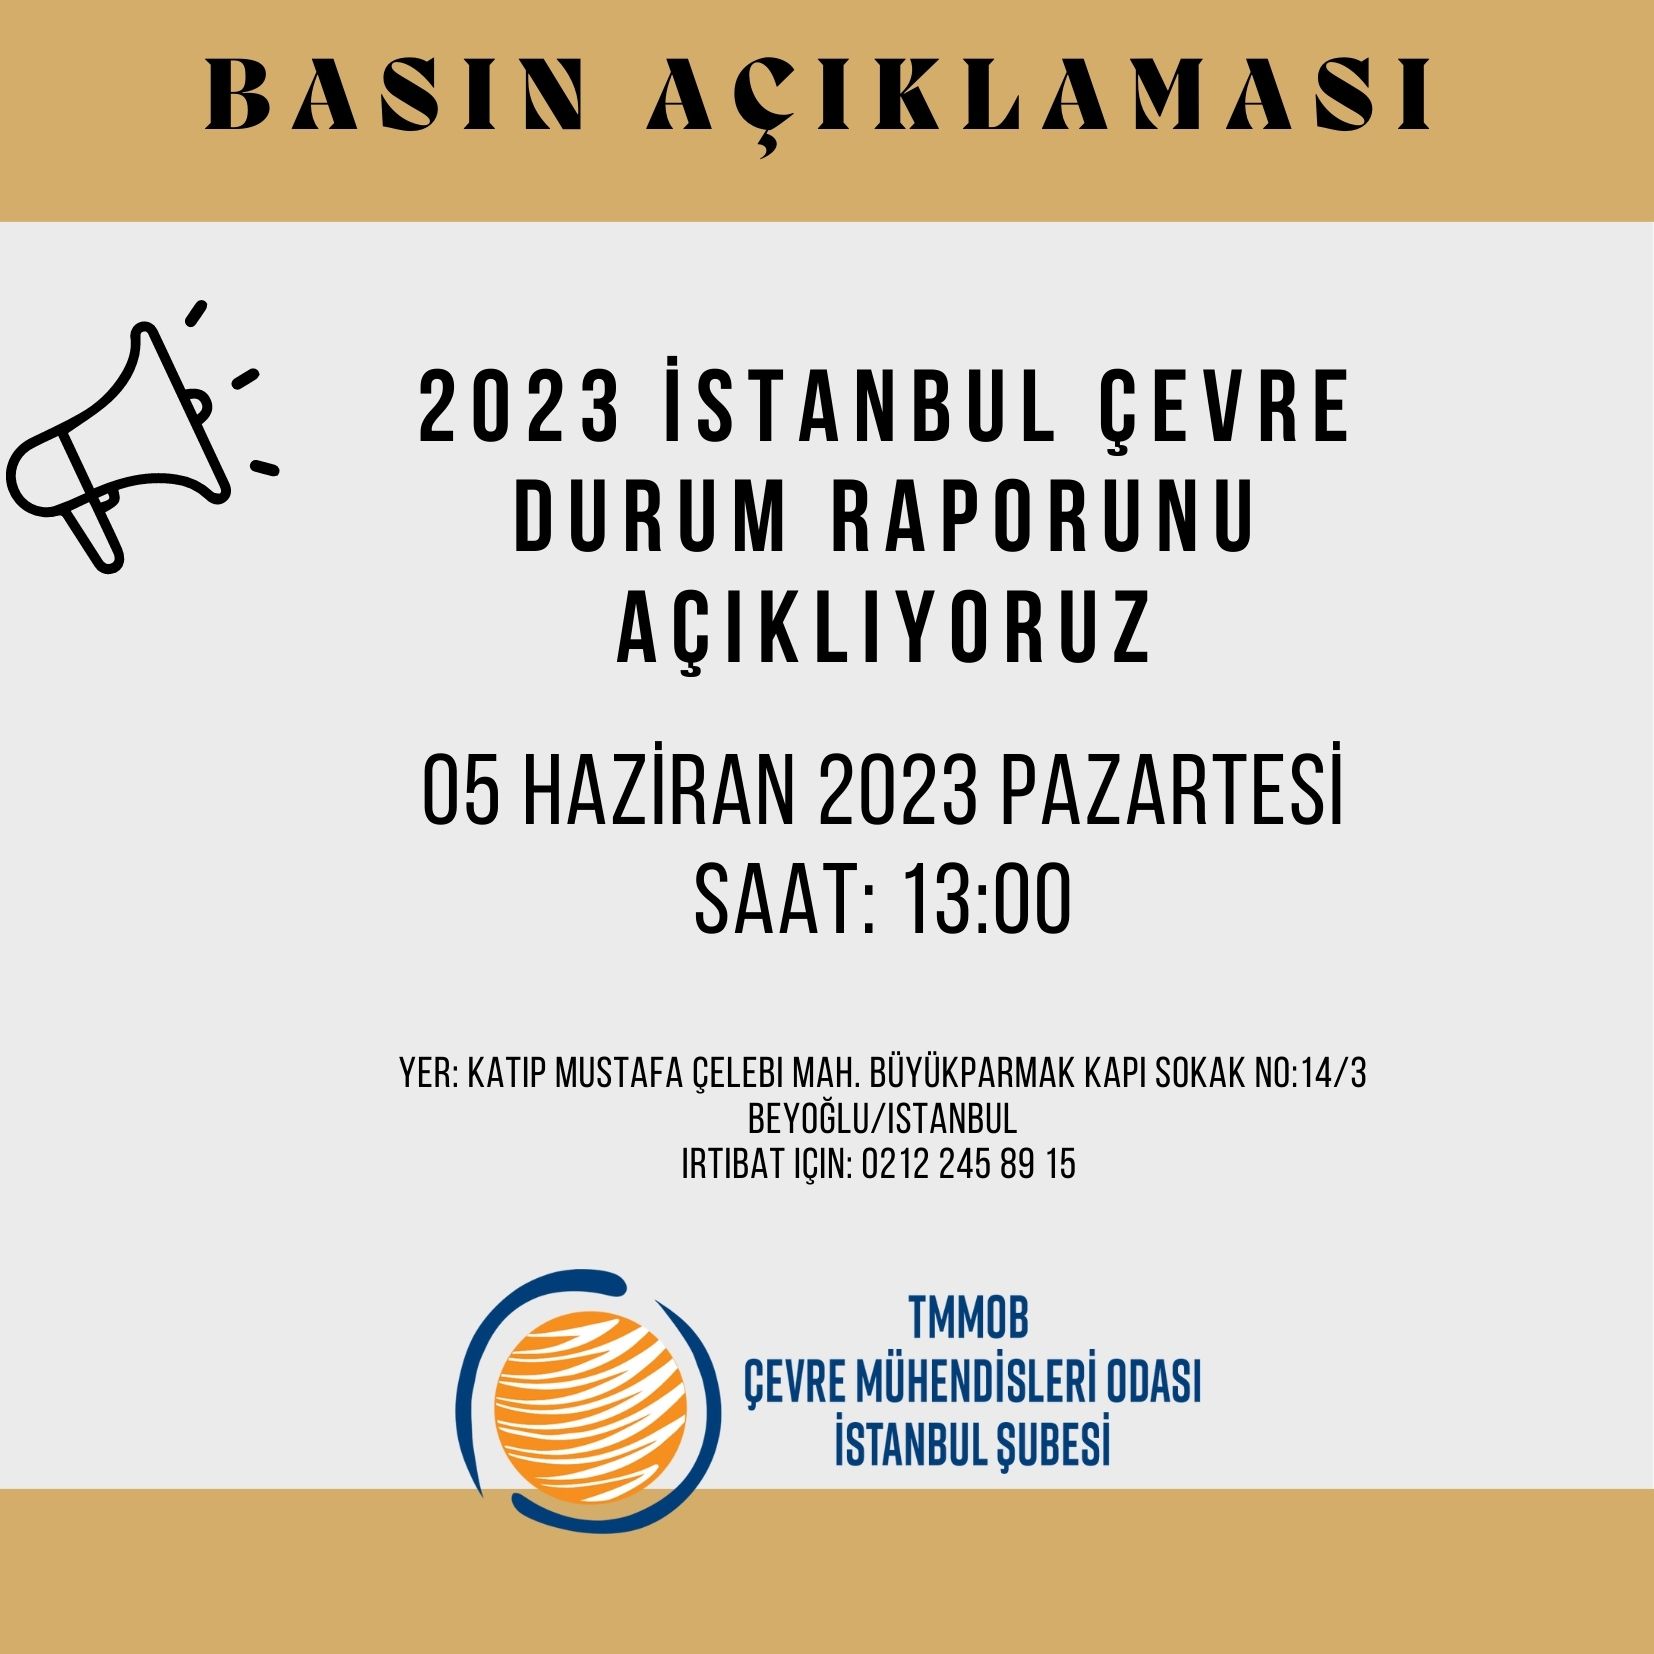 Basın Açıklaması: 2023 İstanbul Çevre Durumu Raporu